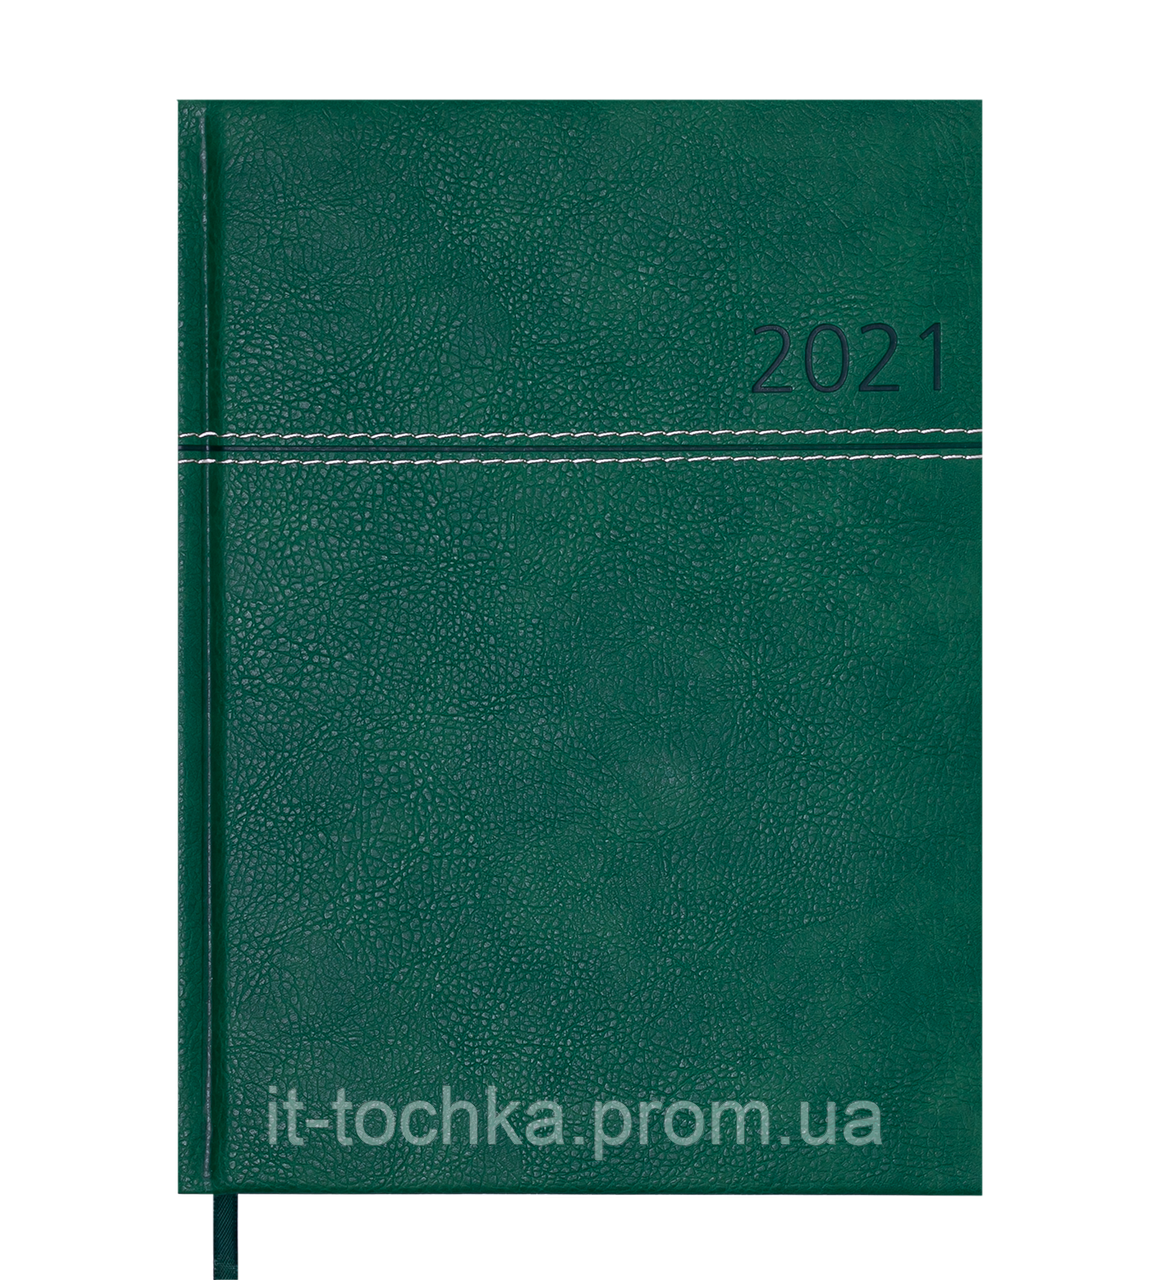 

Ежедневник датир. 2021 orion, a5, зеленый, иск.кожа/поролон bm.2150-04